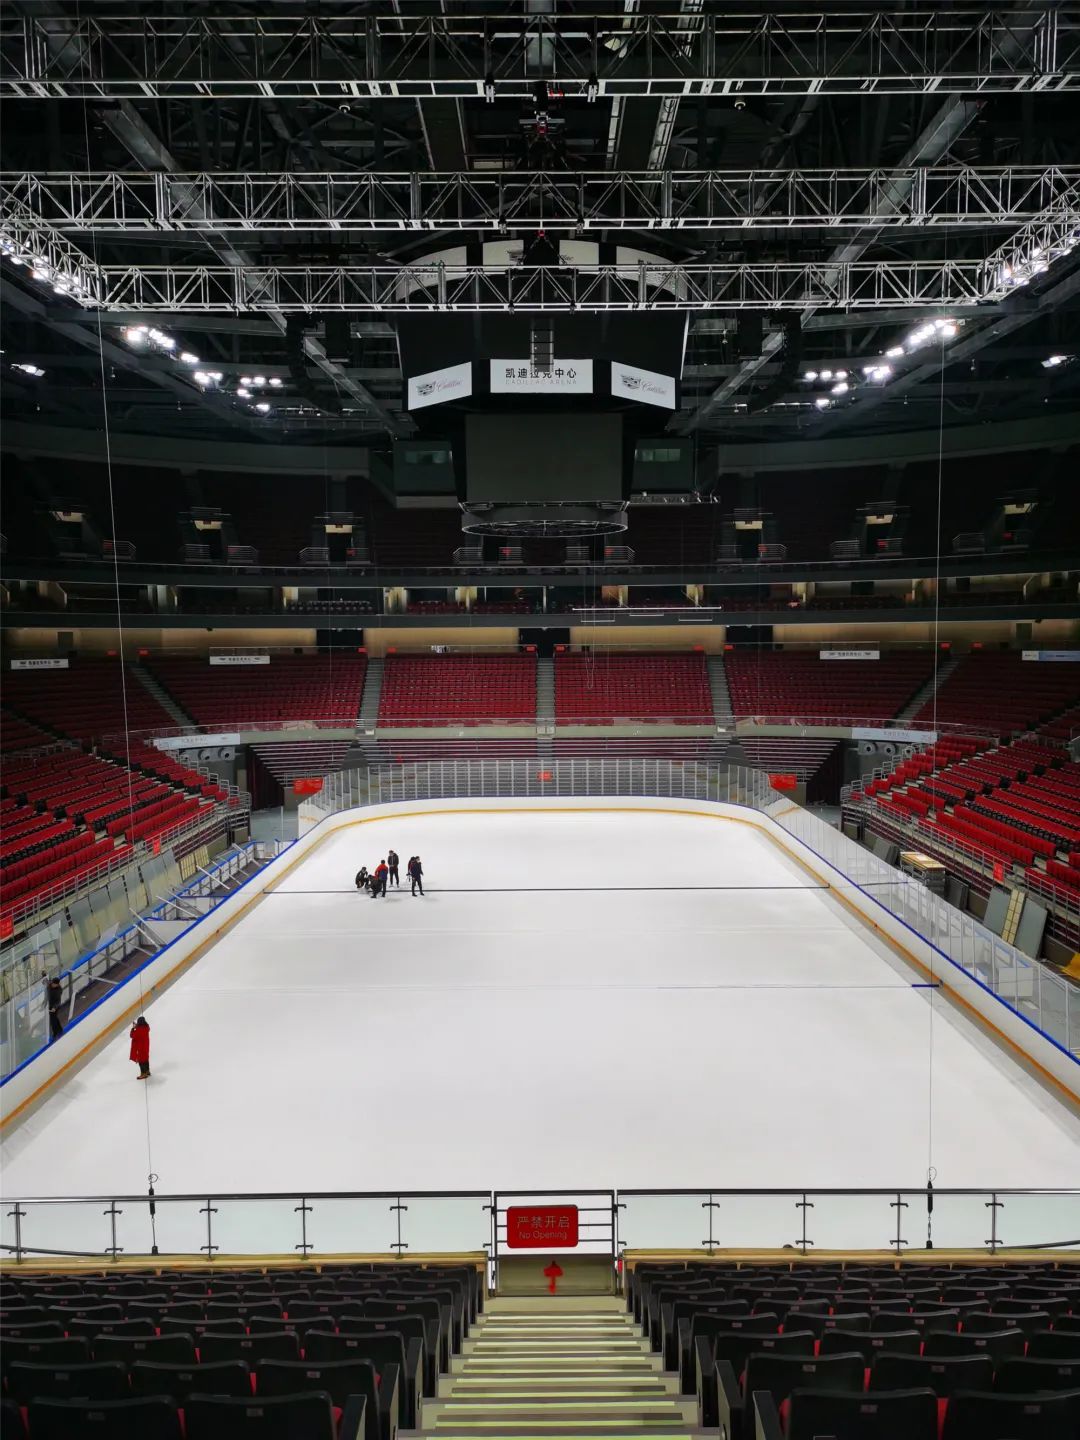 冬奥冰球训练馆通过制冰验收 五棵松冰上运动中心已具备运营条件_凤凰网体育_凤凰网